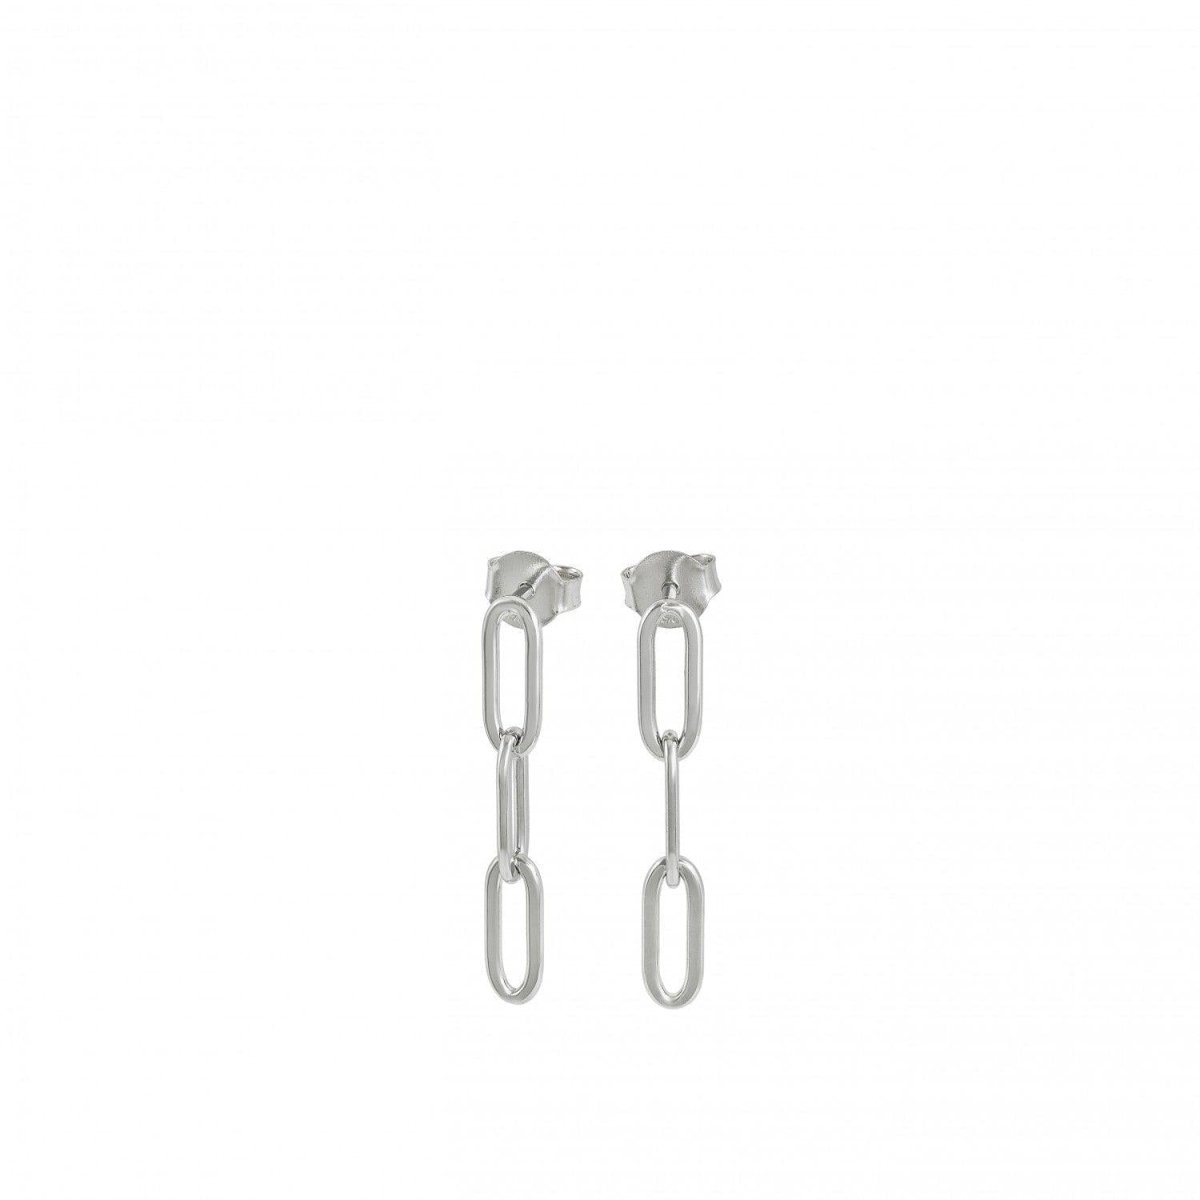 Earrings - Original earrings with triple ring design